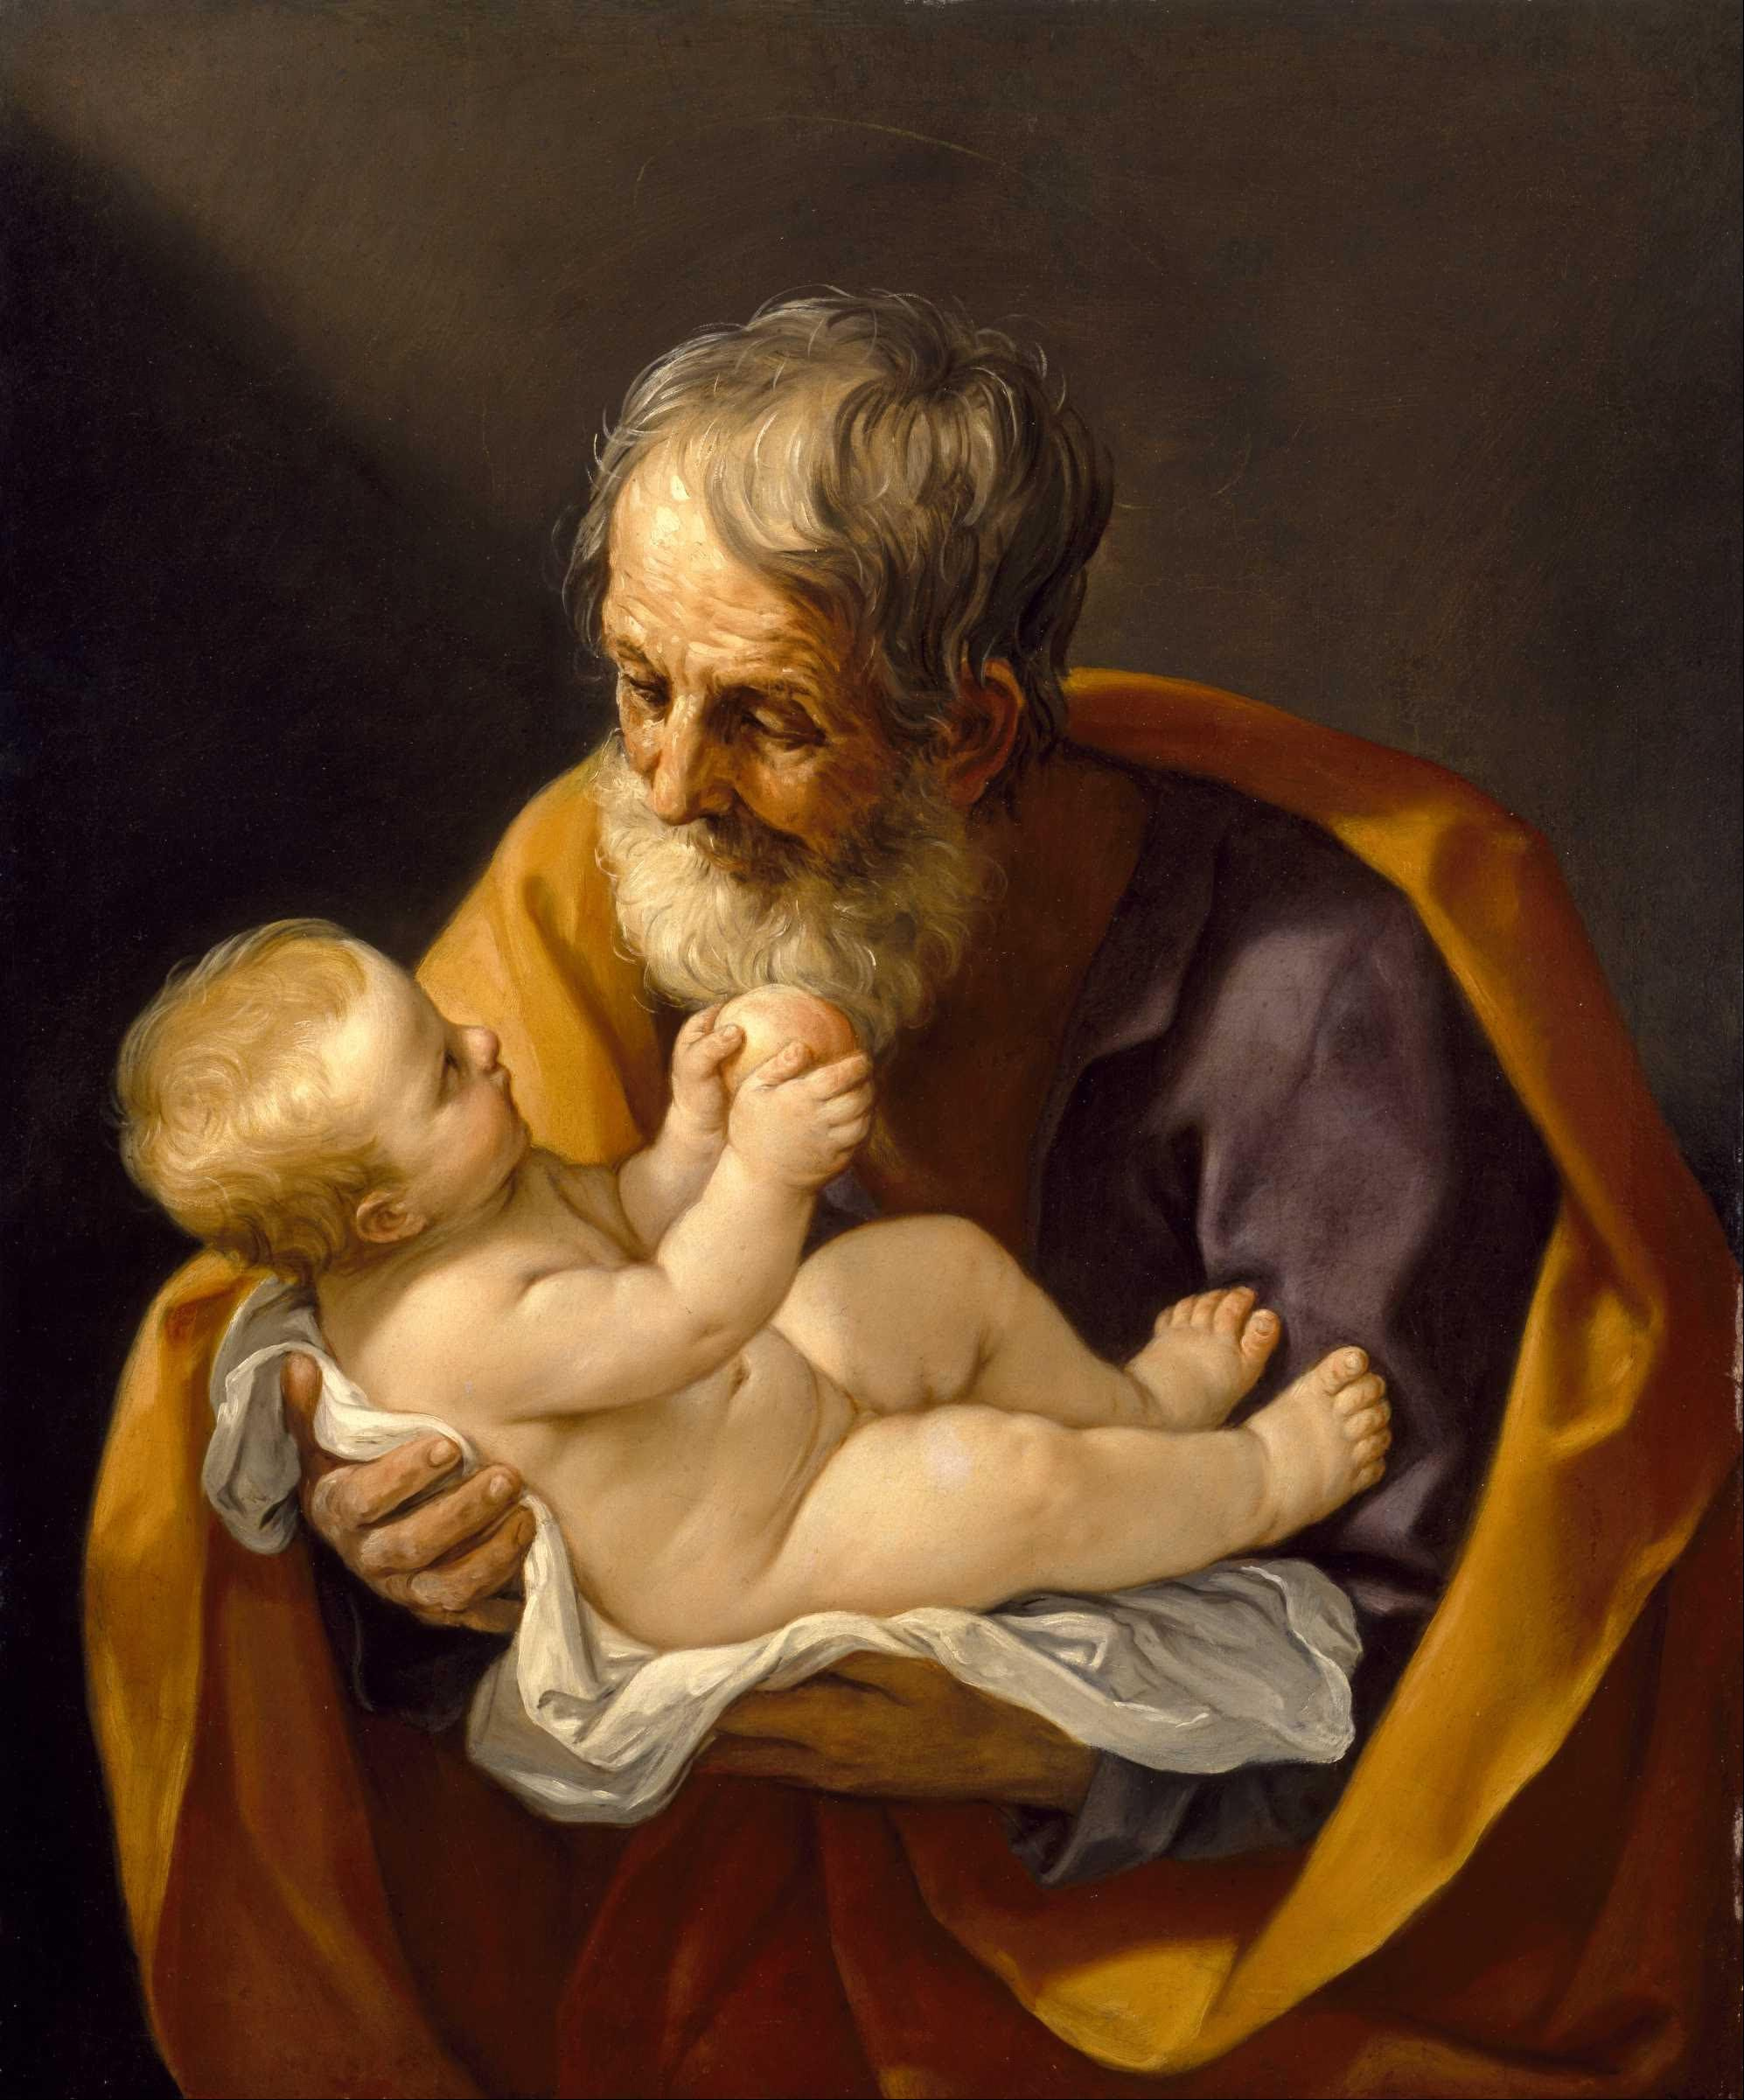 Saint Joseph avec l’enfant Jésus by Guido Reni - 1640 